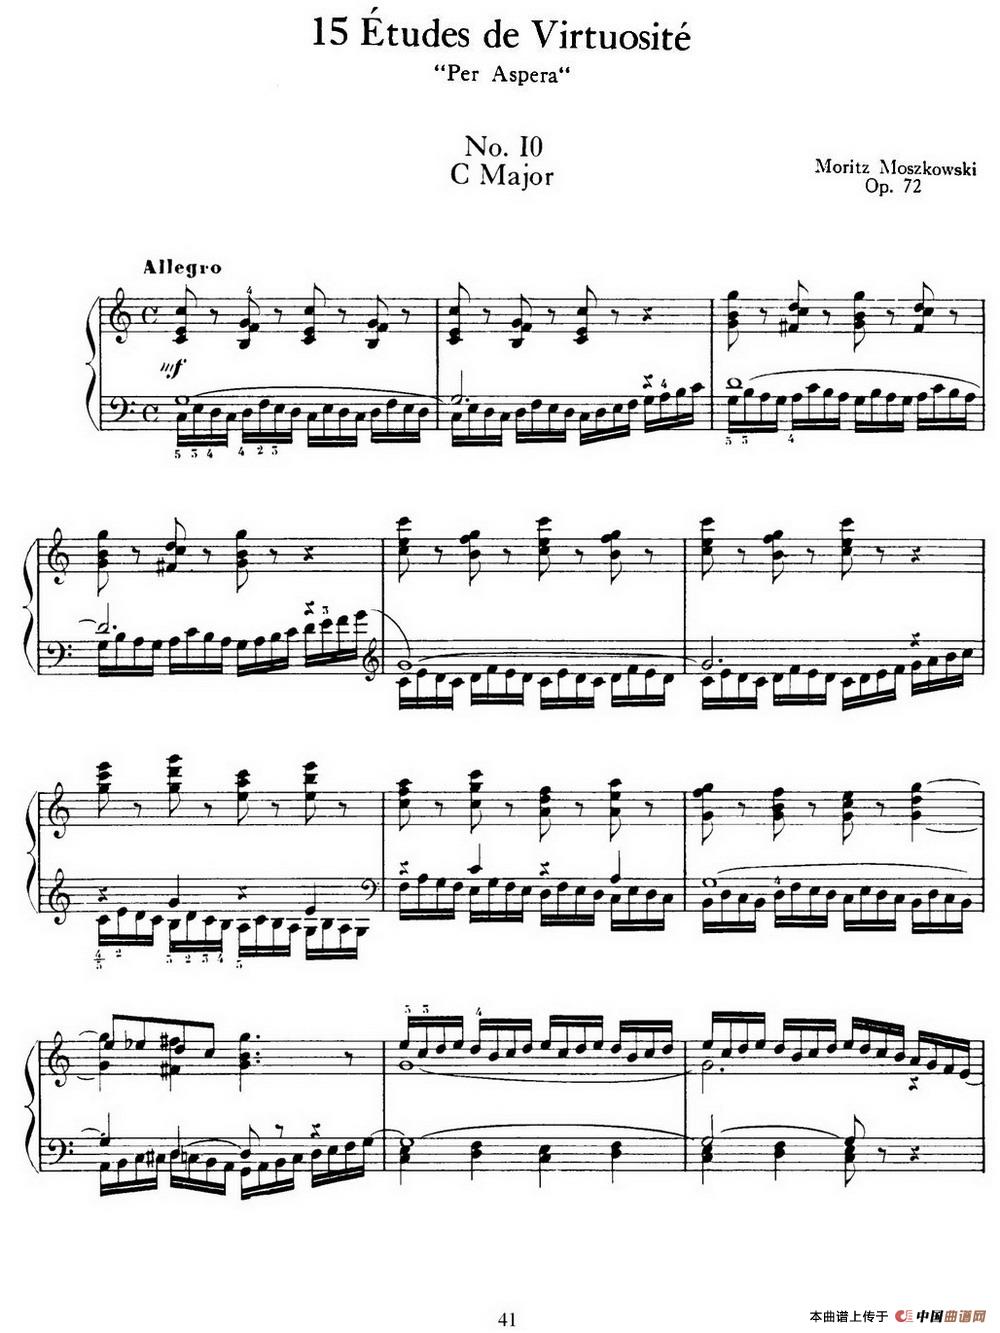 15 Etudes de Virtuosité Op.72 No.10（十五首钢琴练习曲之十）(1)_041=.jpg